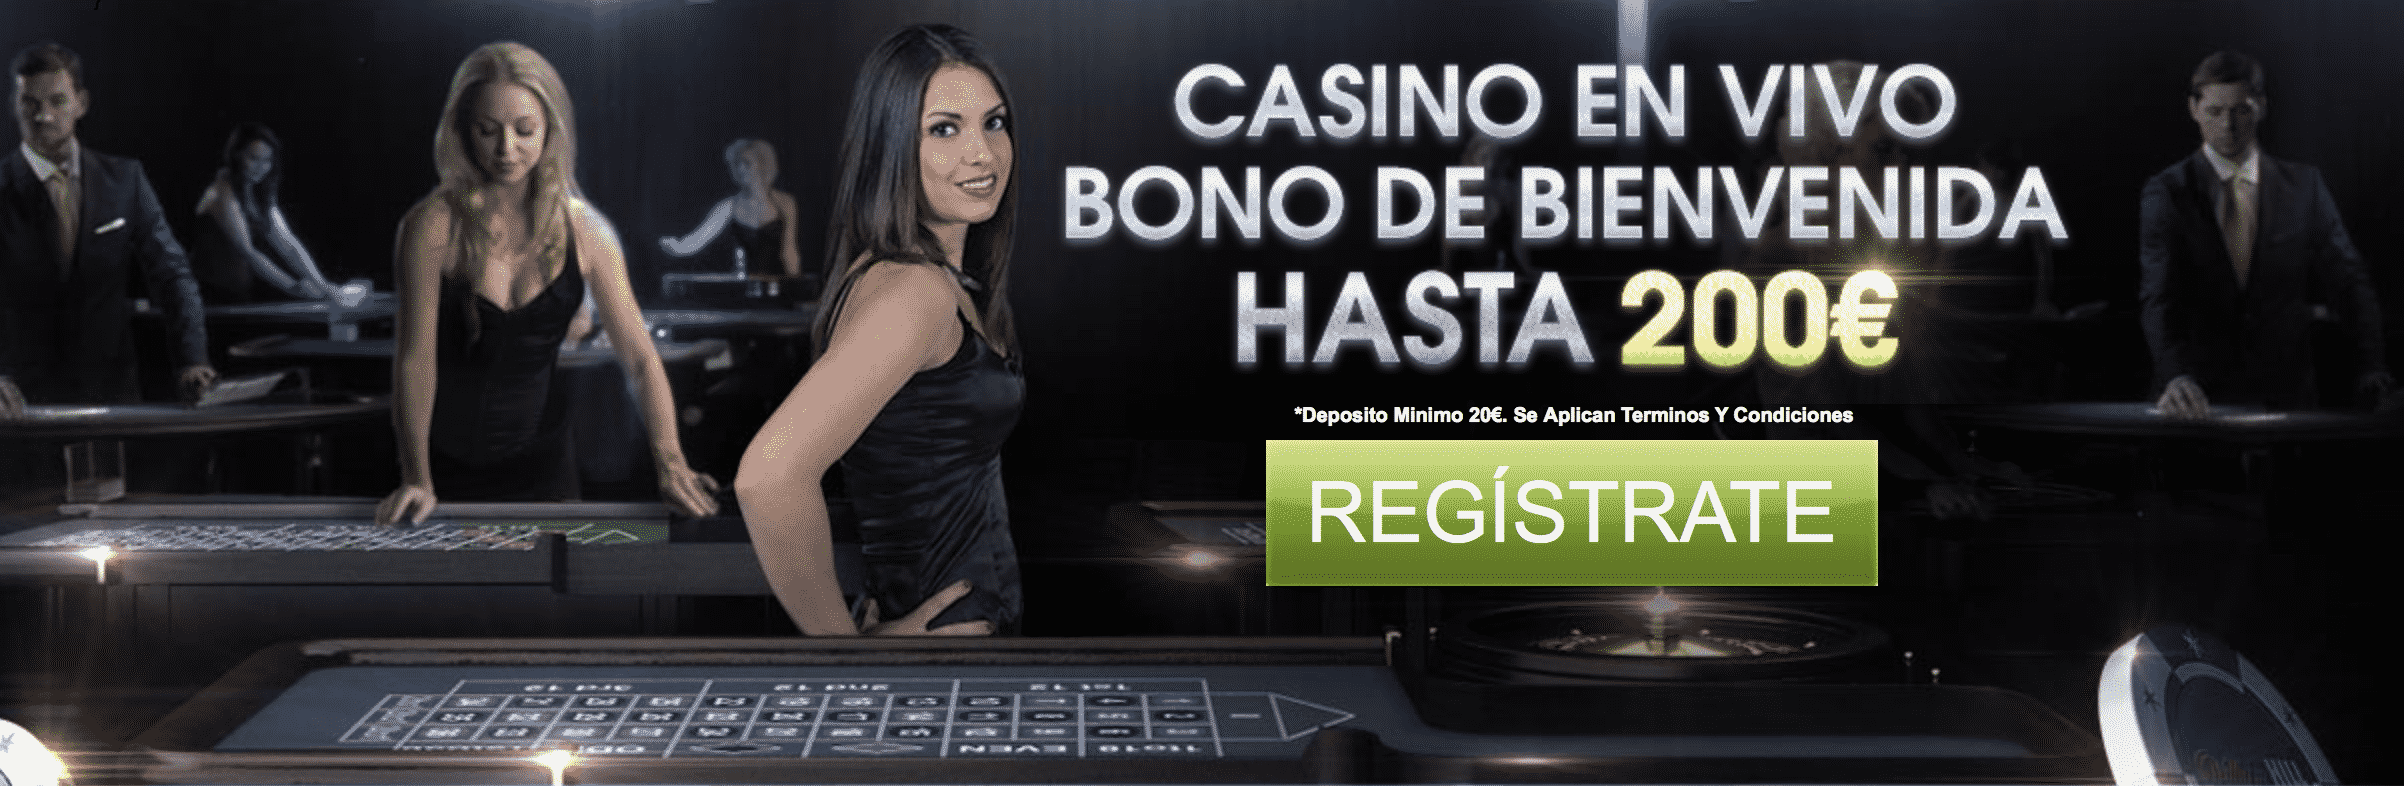 Mejores salas de poker online 2019 casino Amadora bono sin deposito 564995